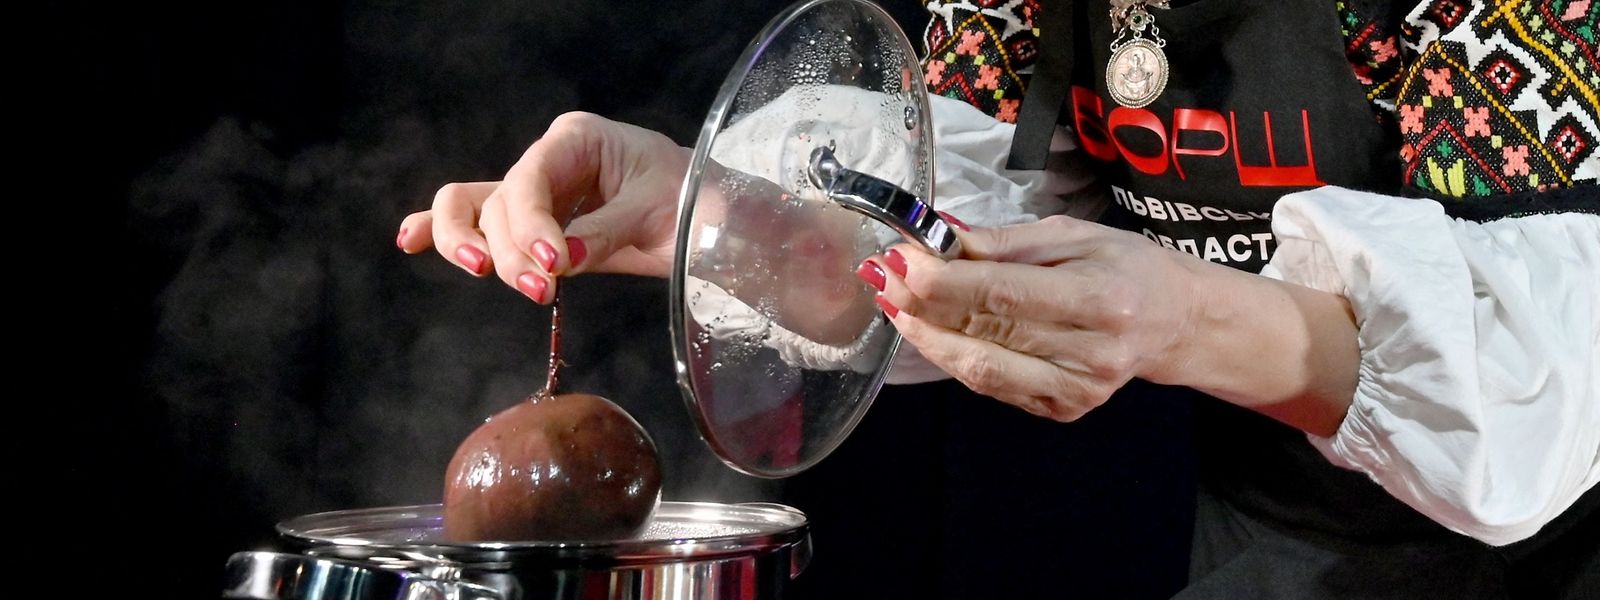 Sopa 'borscht' é disputada como património imaterial pela Rússia e pela Ucrânia.